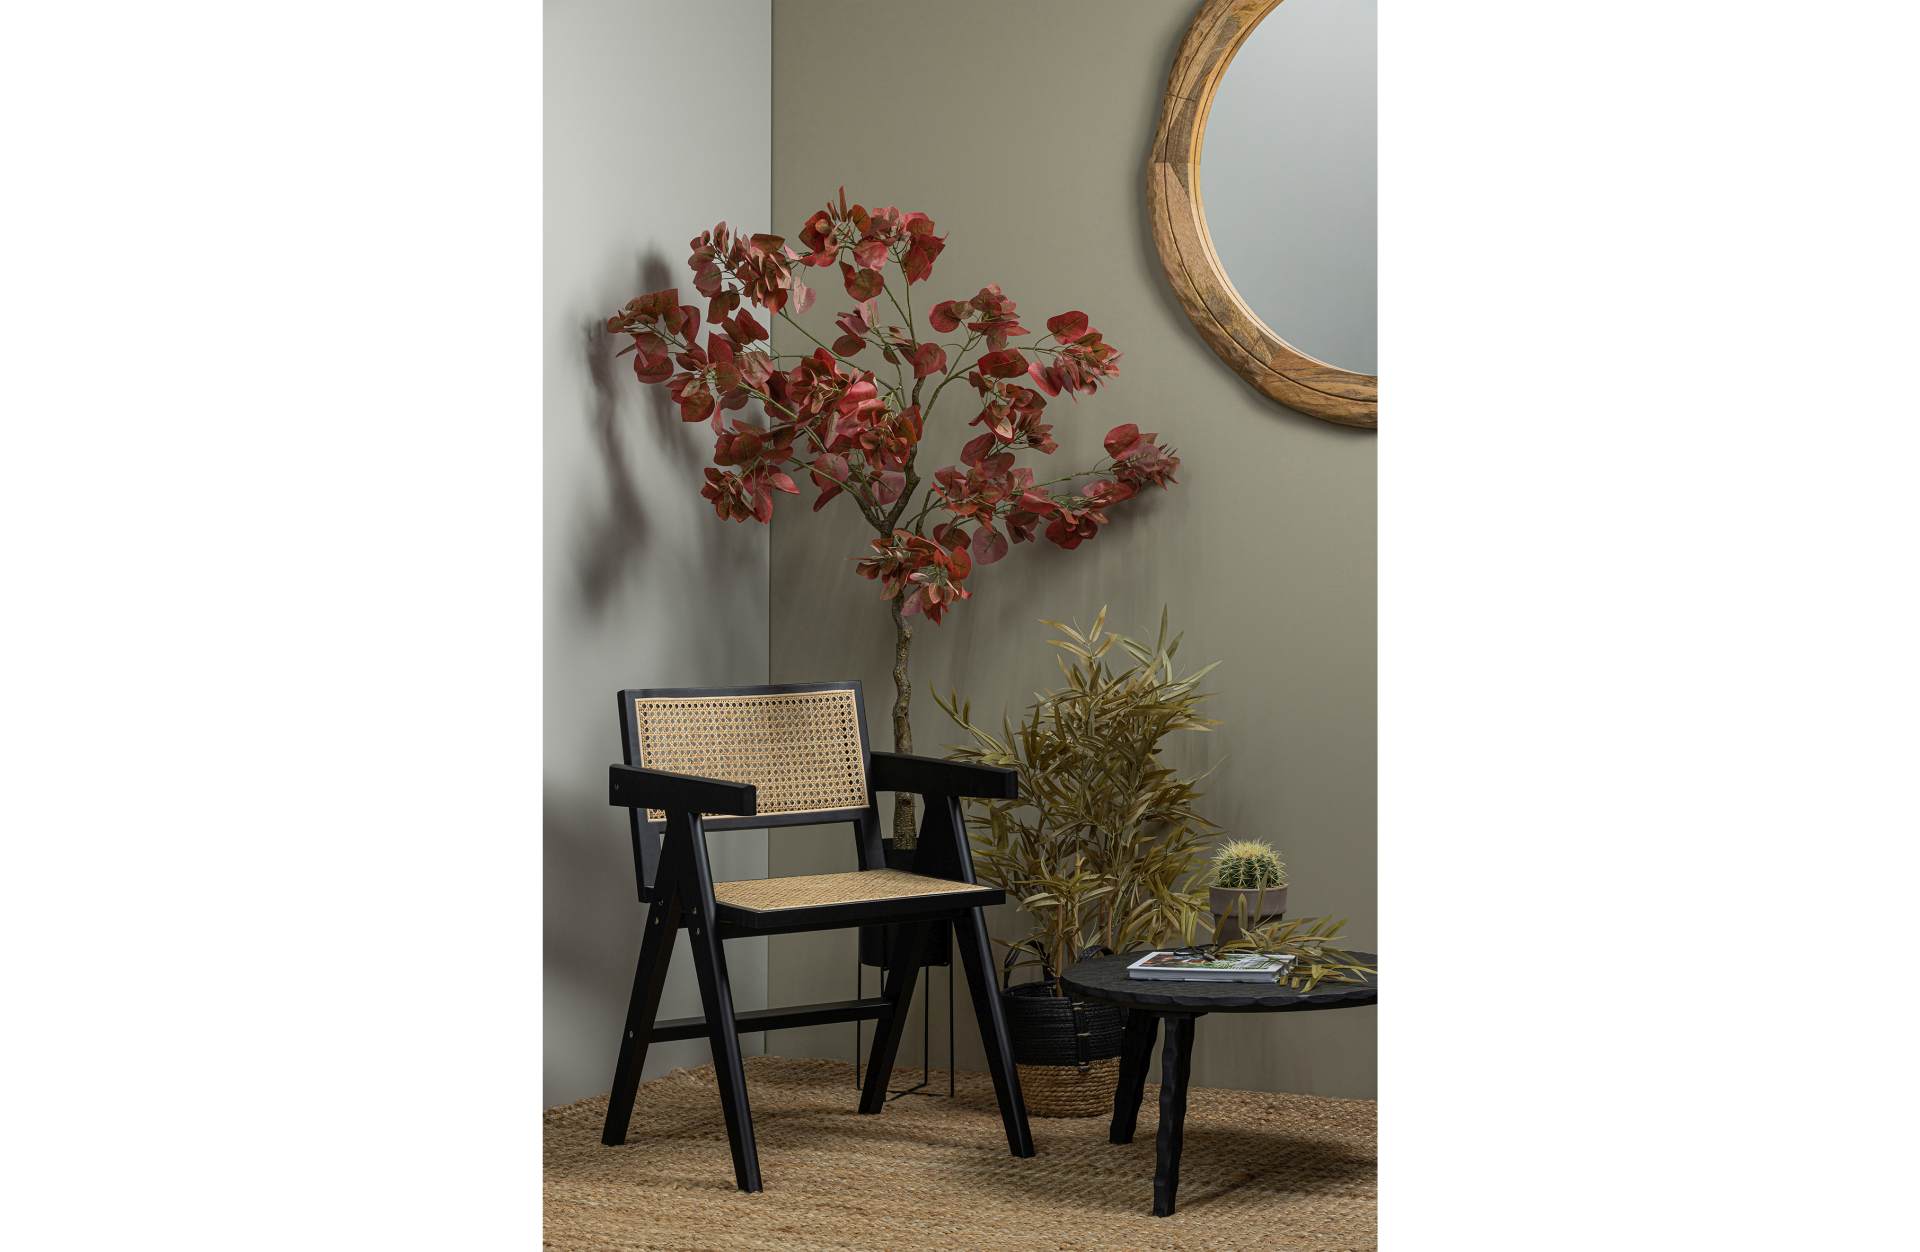 Der Esszimmerstuhl Gunn besitzt ein Skandinavisches Design. Gefertigt wurde der Stuhl aus Rattan und Kiefernholz, welches eine schwarze Farbe besitzt.